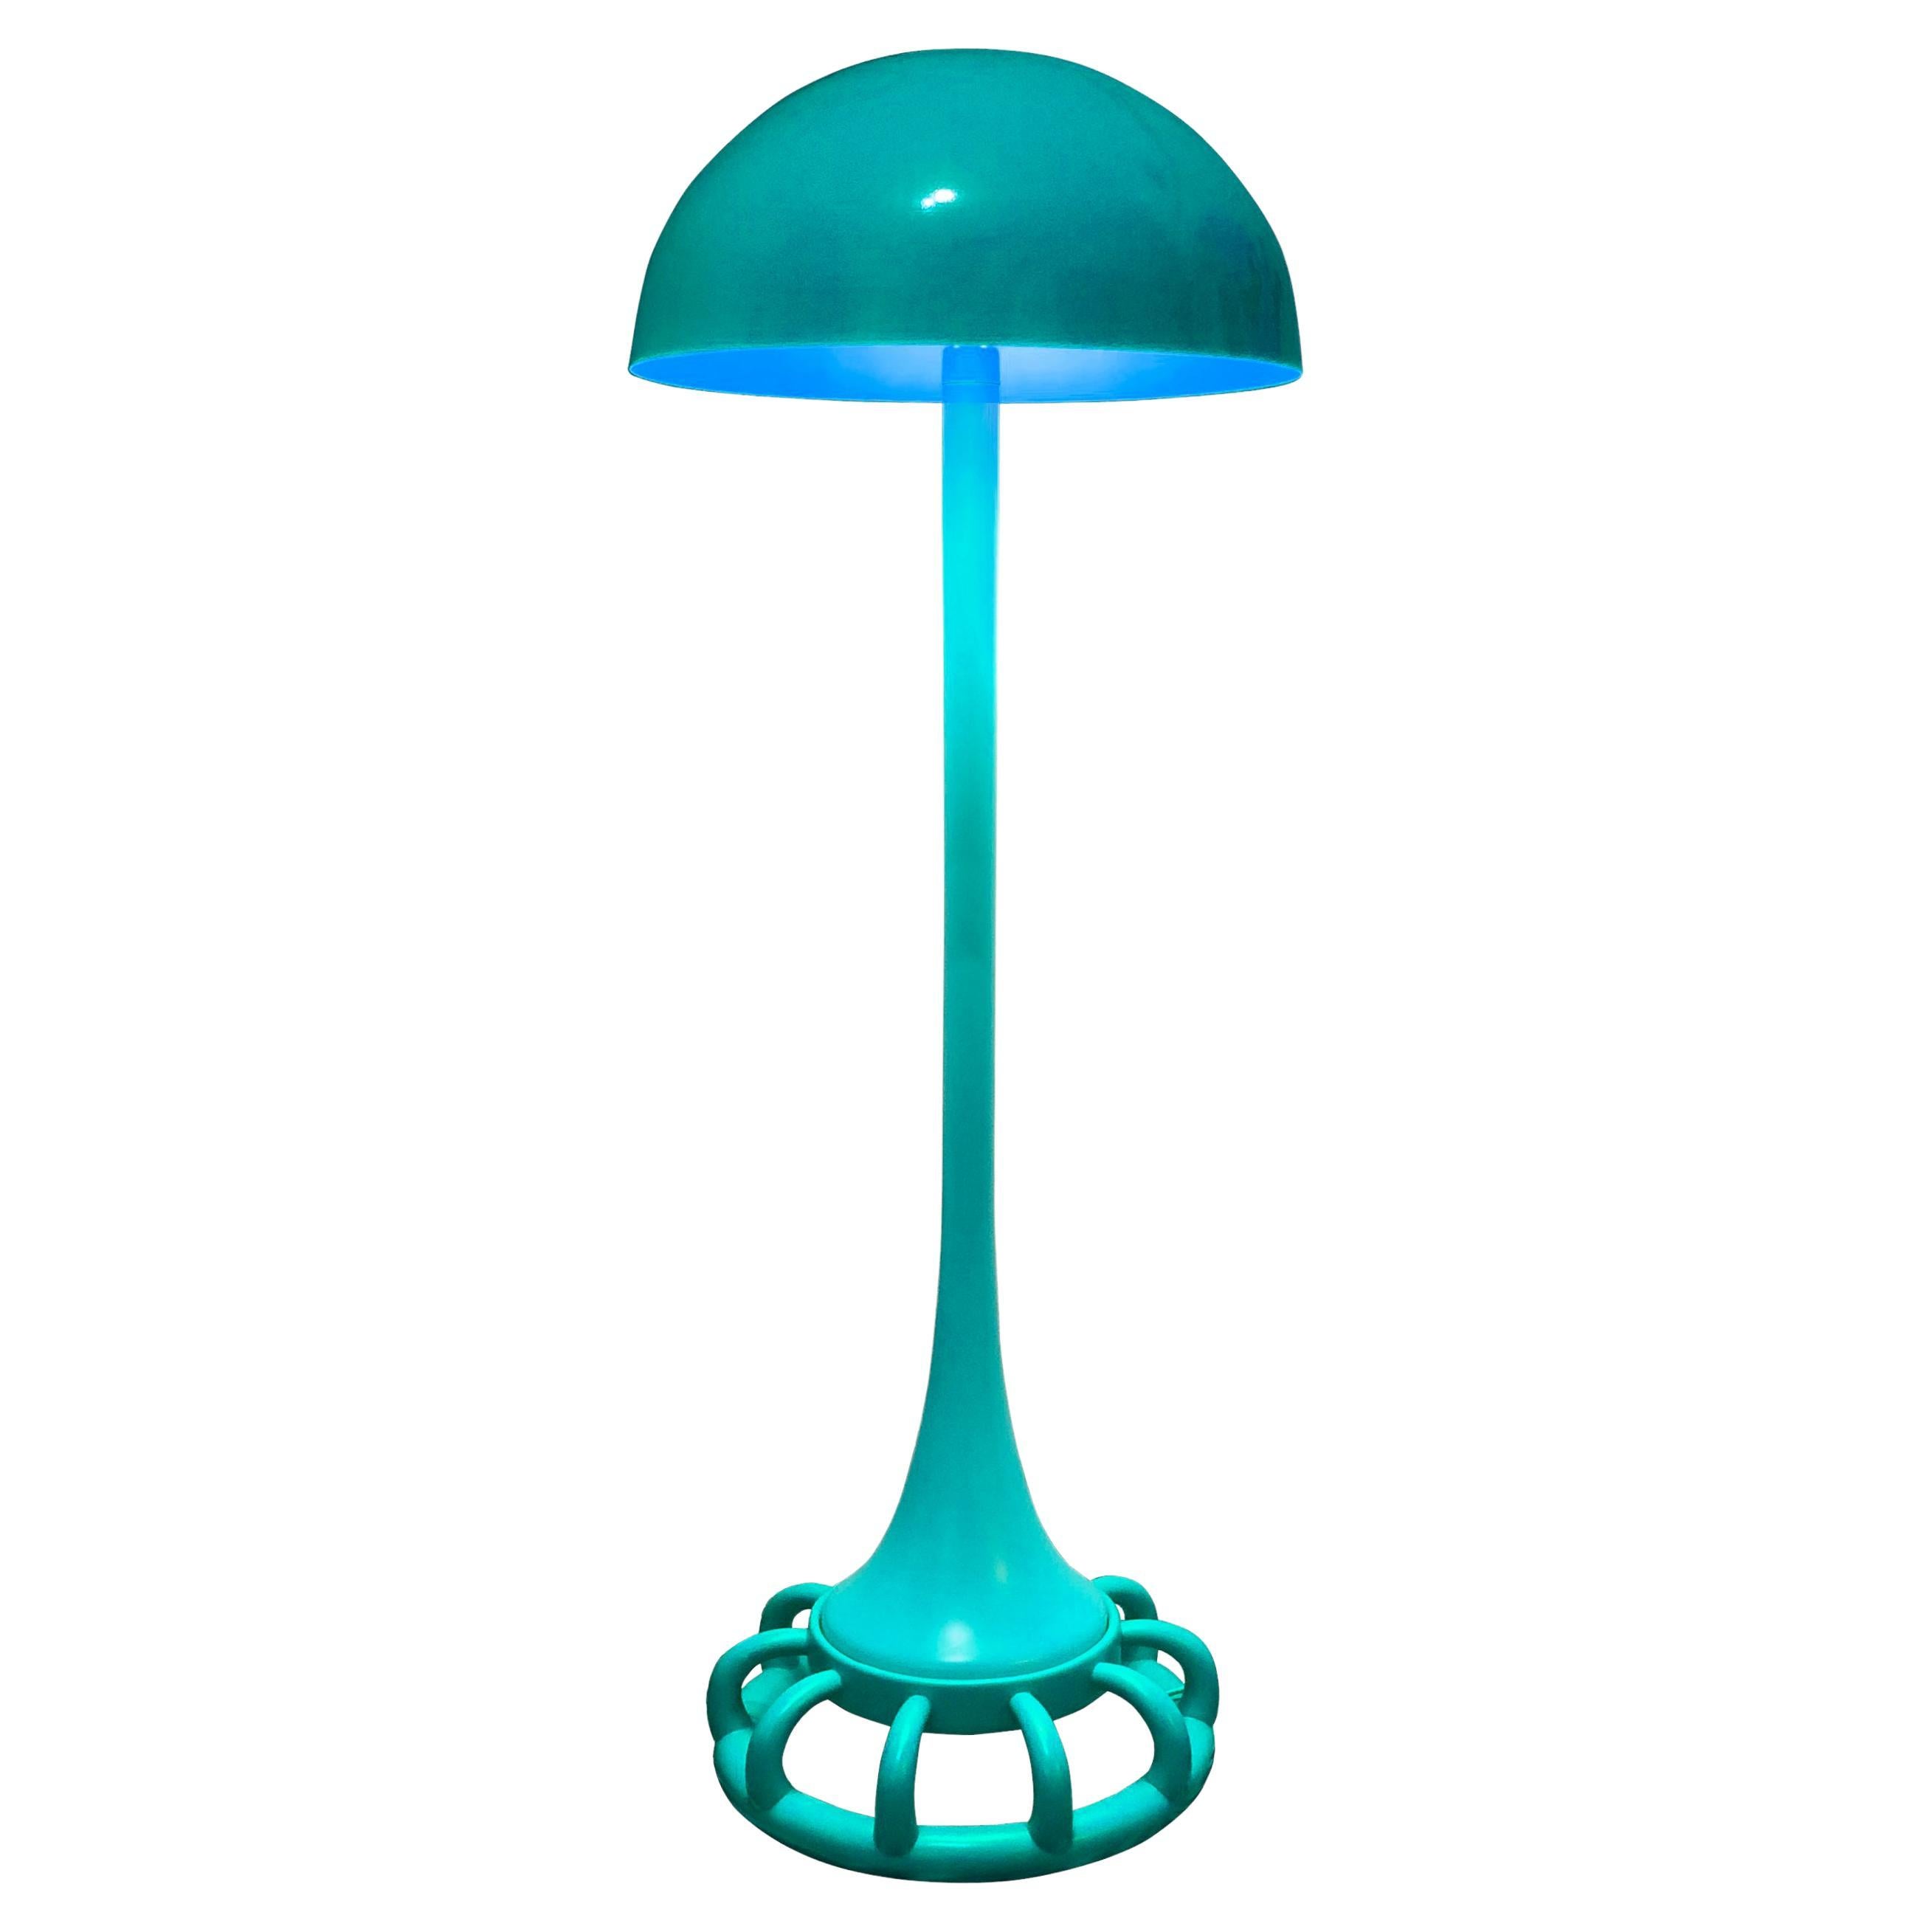 Jellyfish Floor Lamp: Artistic Turquoise Illumination